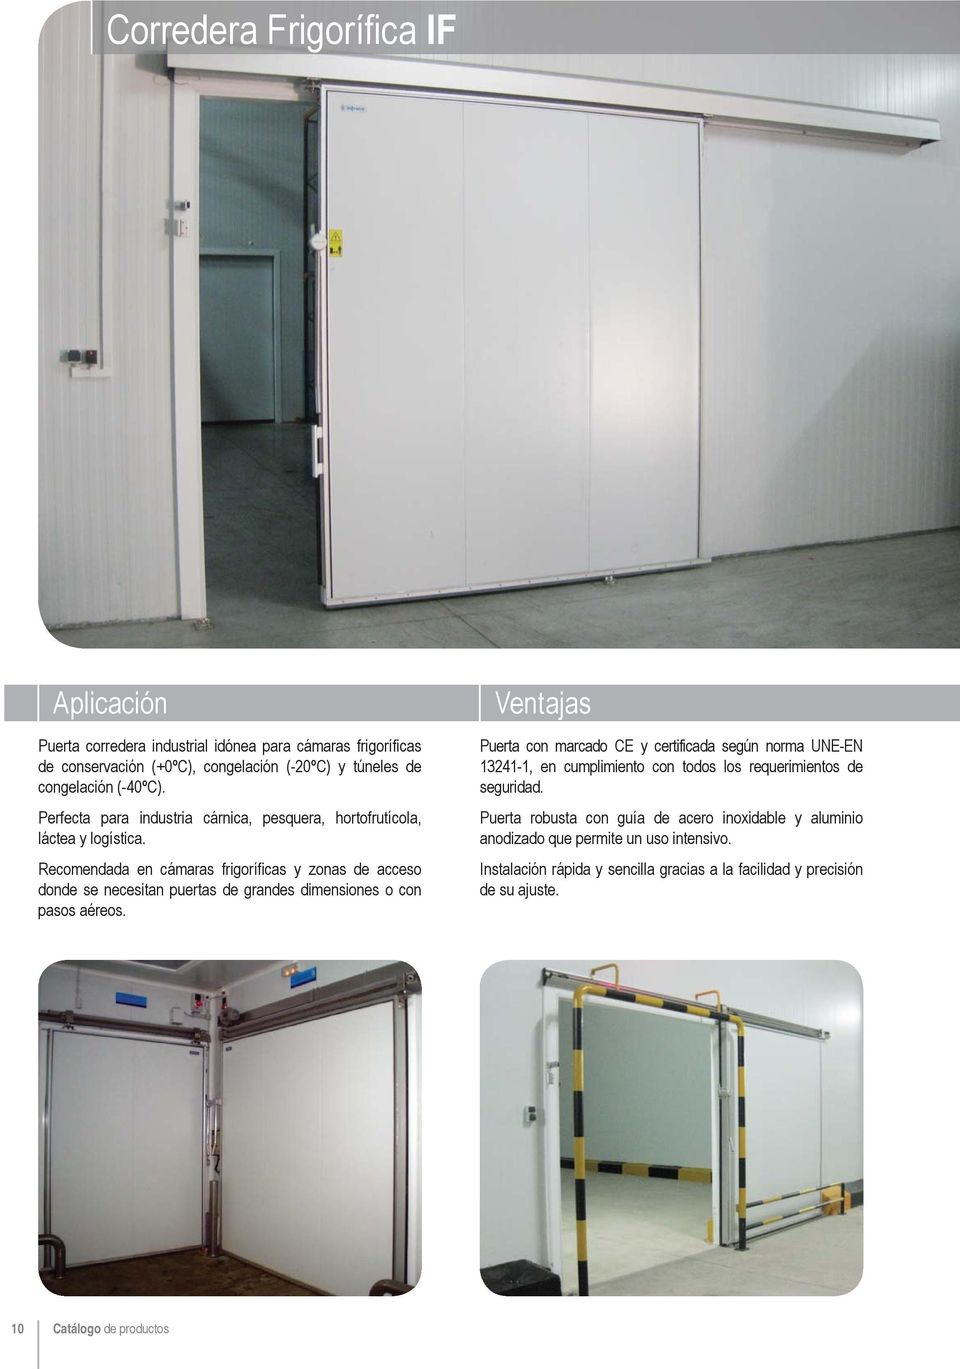 Recomendada en cámaras frigoríficas y zonas de acceso donde se necesitan puertas de grandes dimensiones o con pasos aéreos.